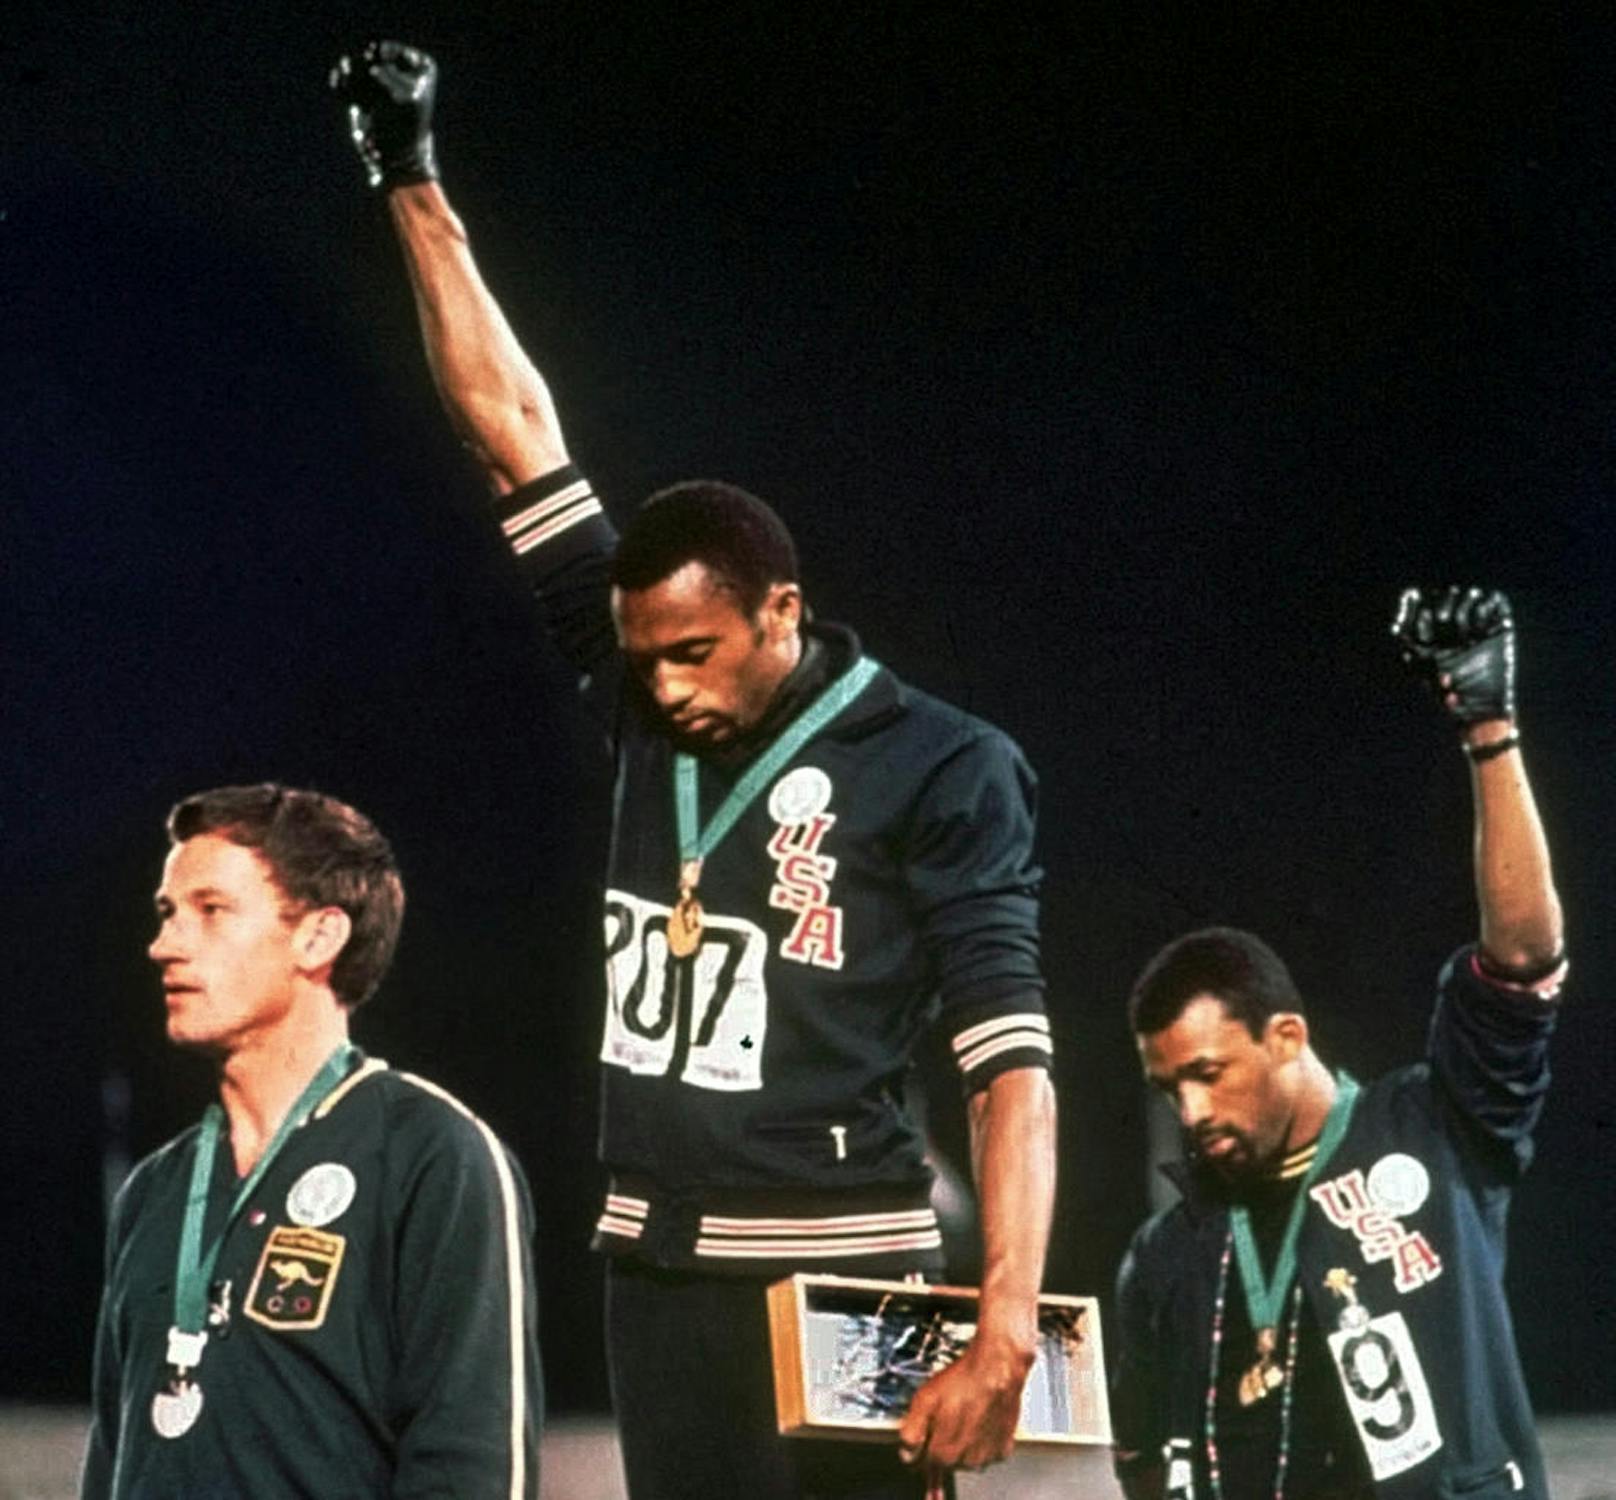 Bei den Olympischen Spielen 1968 in Mexiko City erhoben die US-Amerikaner Tommie Smith und John Carlos ihre rechte Faust - das Zeichen der Black Panther. Beide Athleten wurden auf Druck des IOC von den Olympischen Spielen ausgeschlossen. 